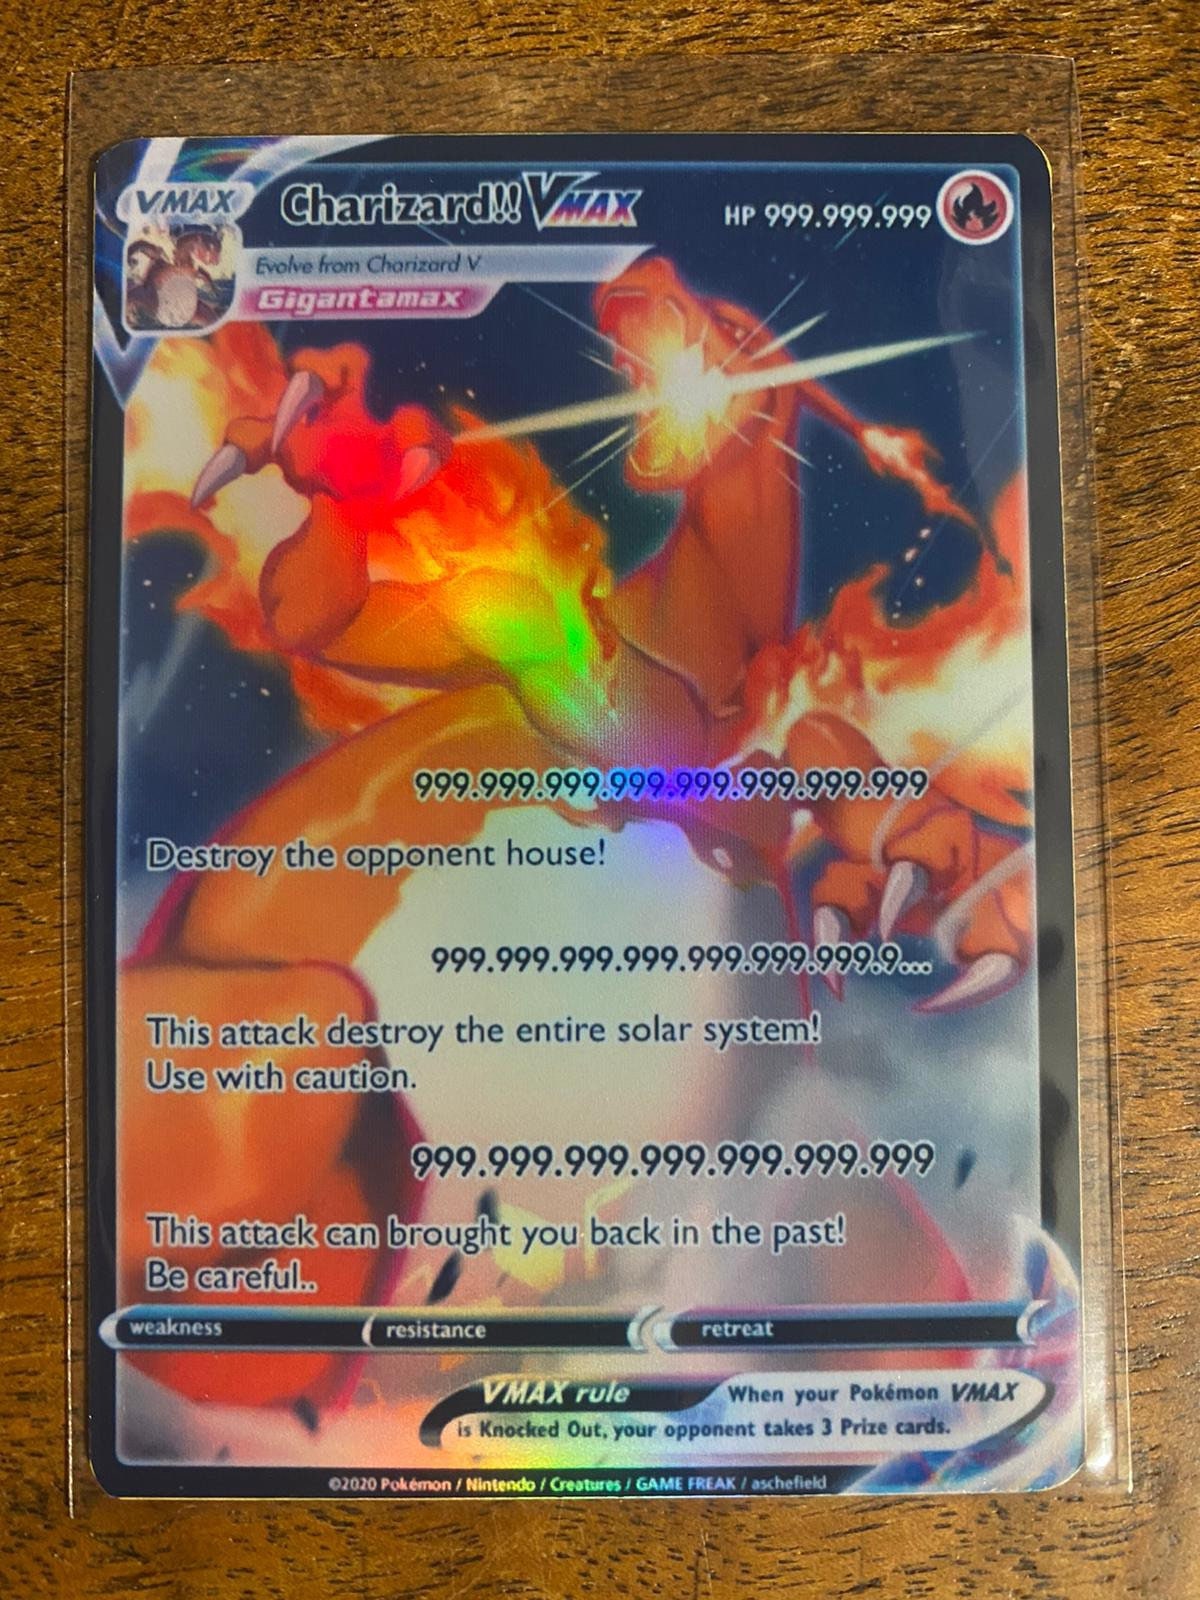 Carta Pokemon Charizard Vmax Shiny - Gigantamax - R$ 20,38